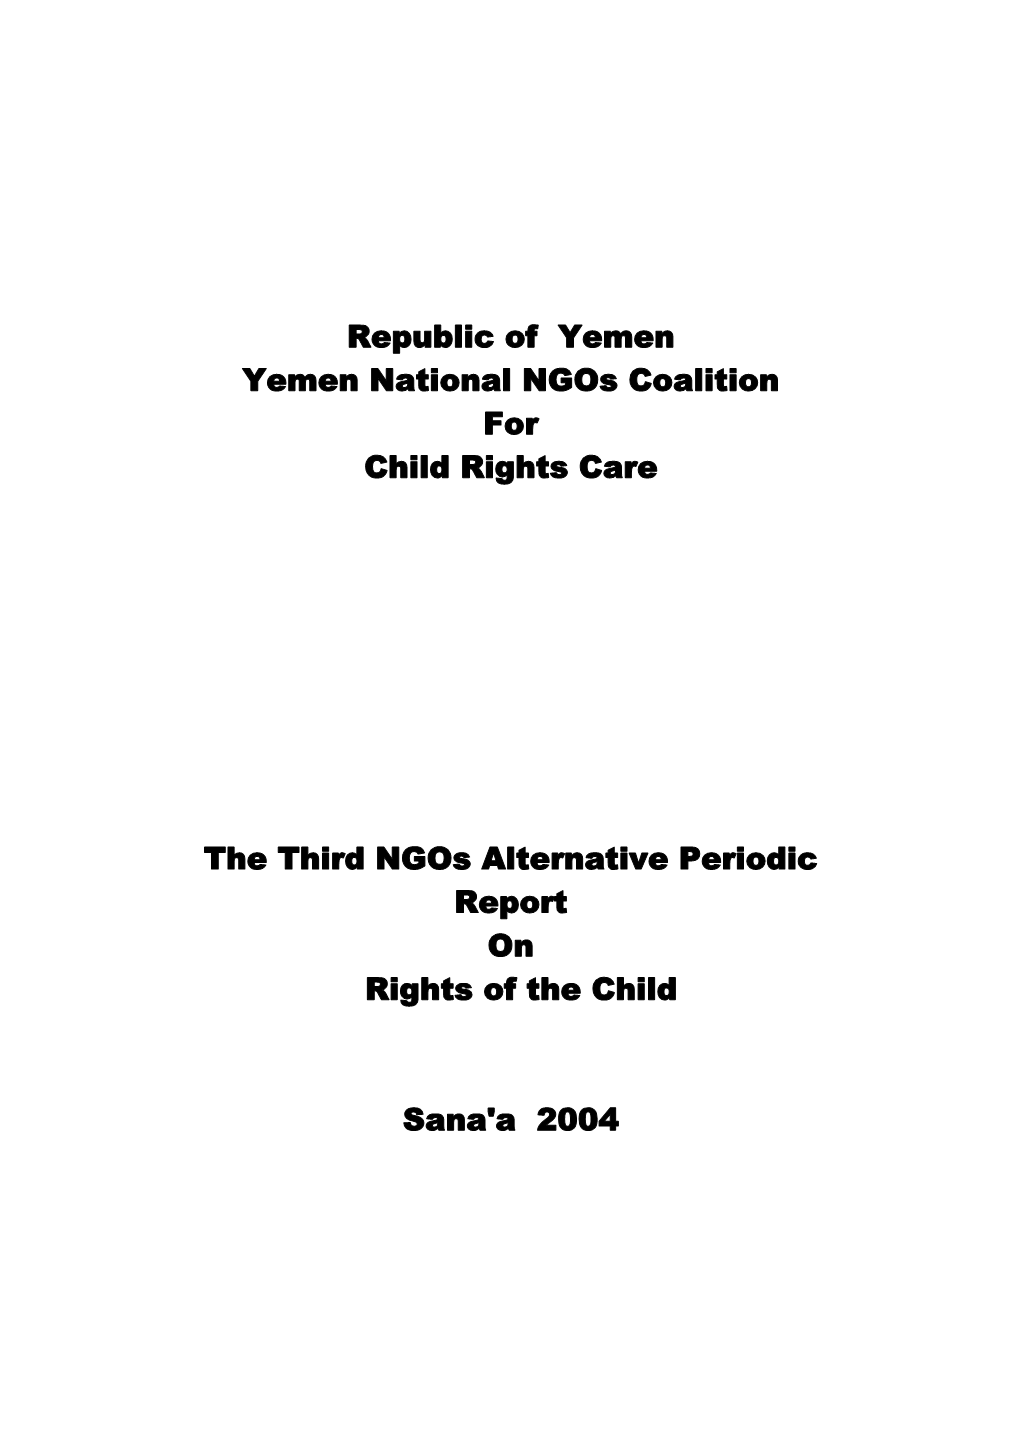 Republic of Yemen Yemen National Ngos Coalition for Child Rights Care